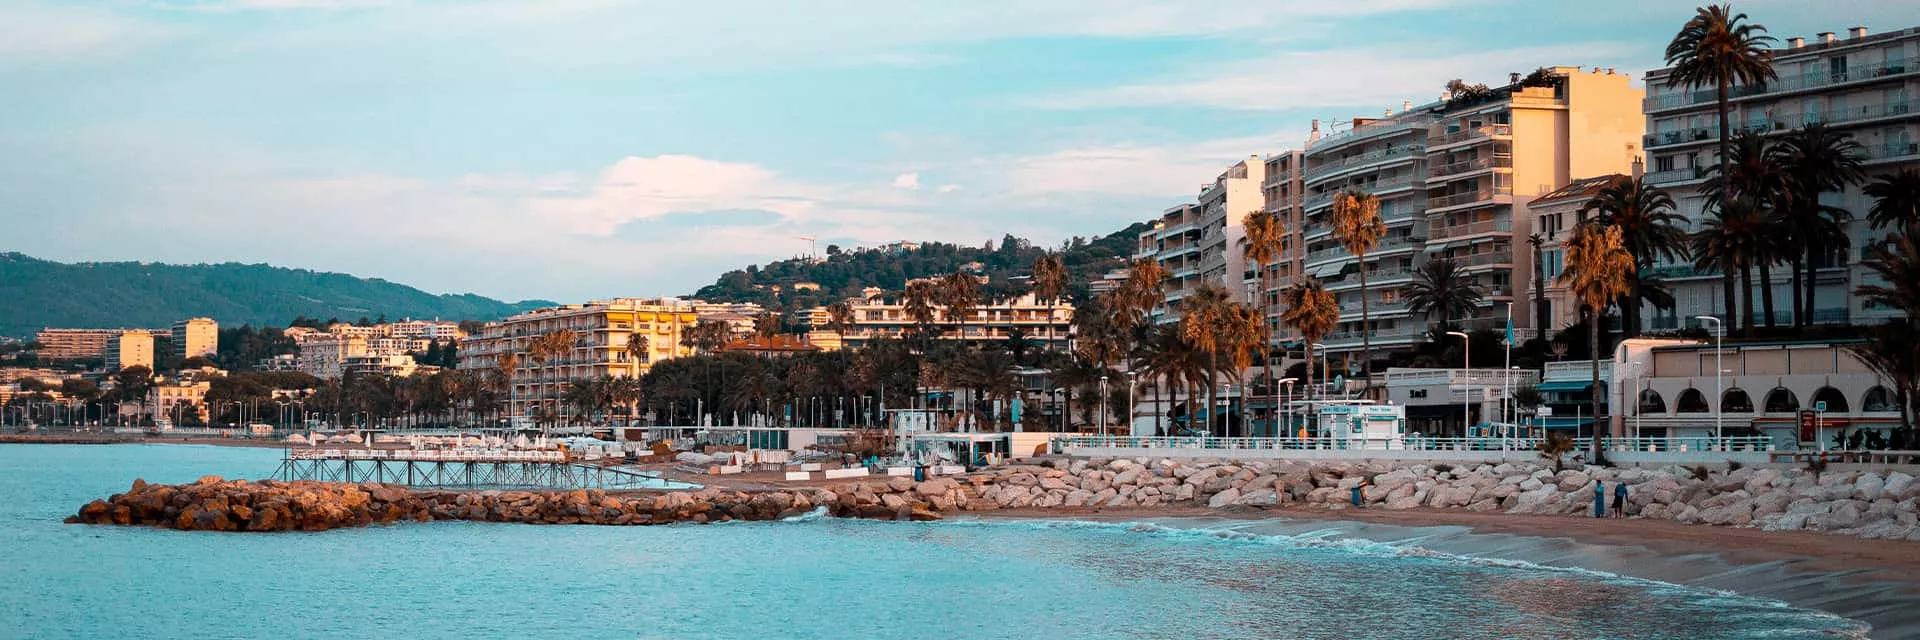 Cannes Plage Côte d'azur